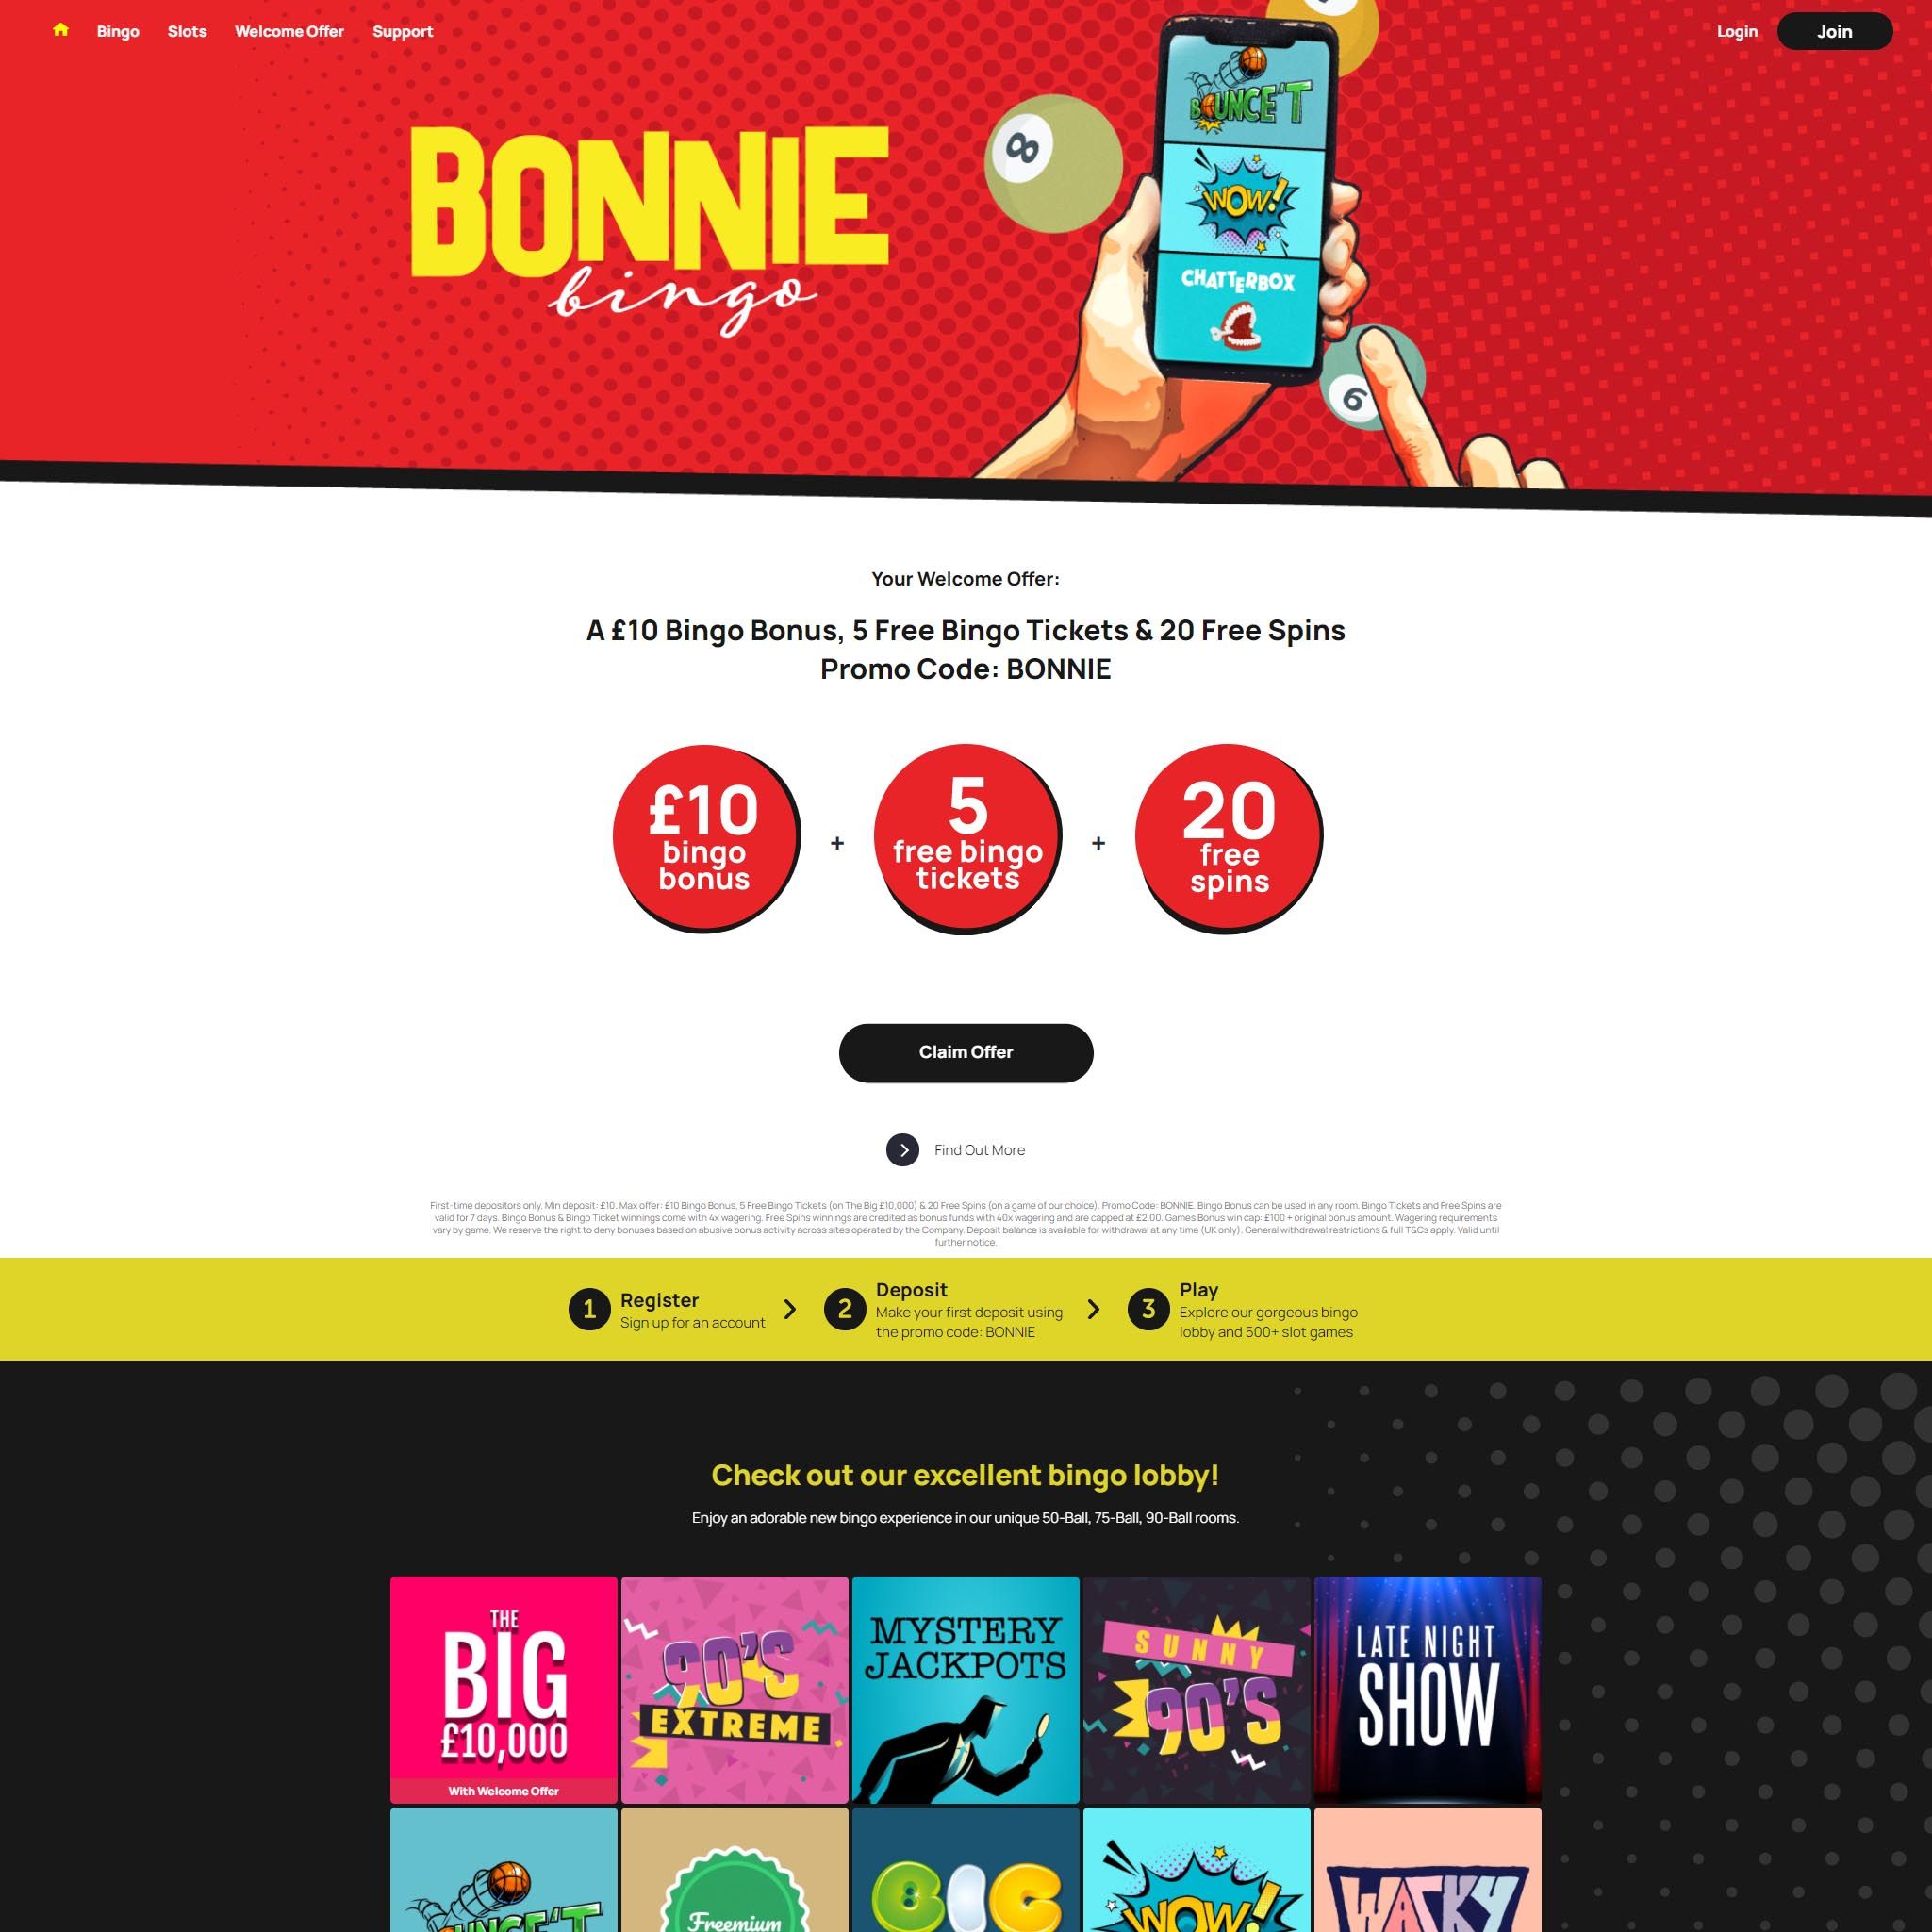 Bonnie Bingo UK review by Mr. Gamble